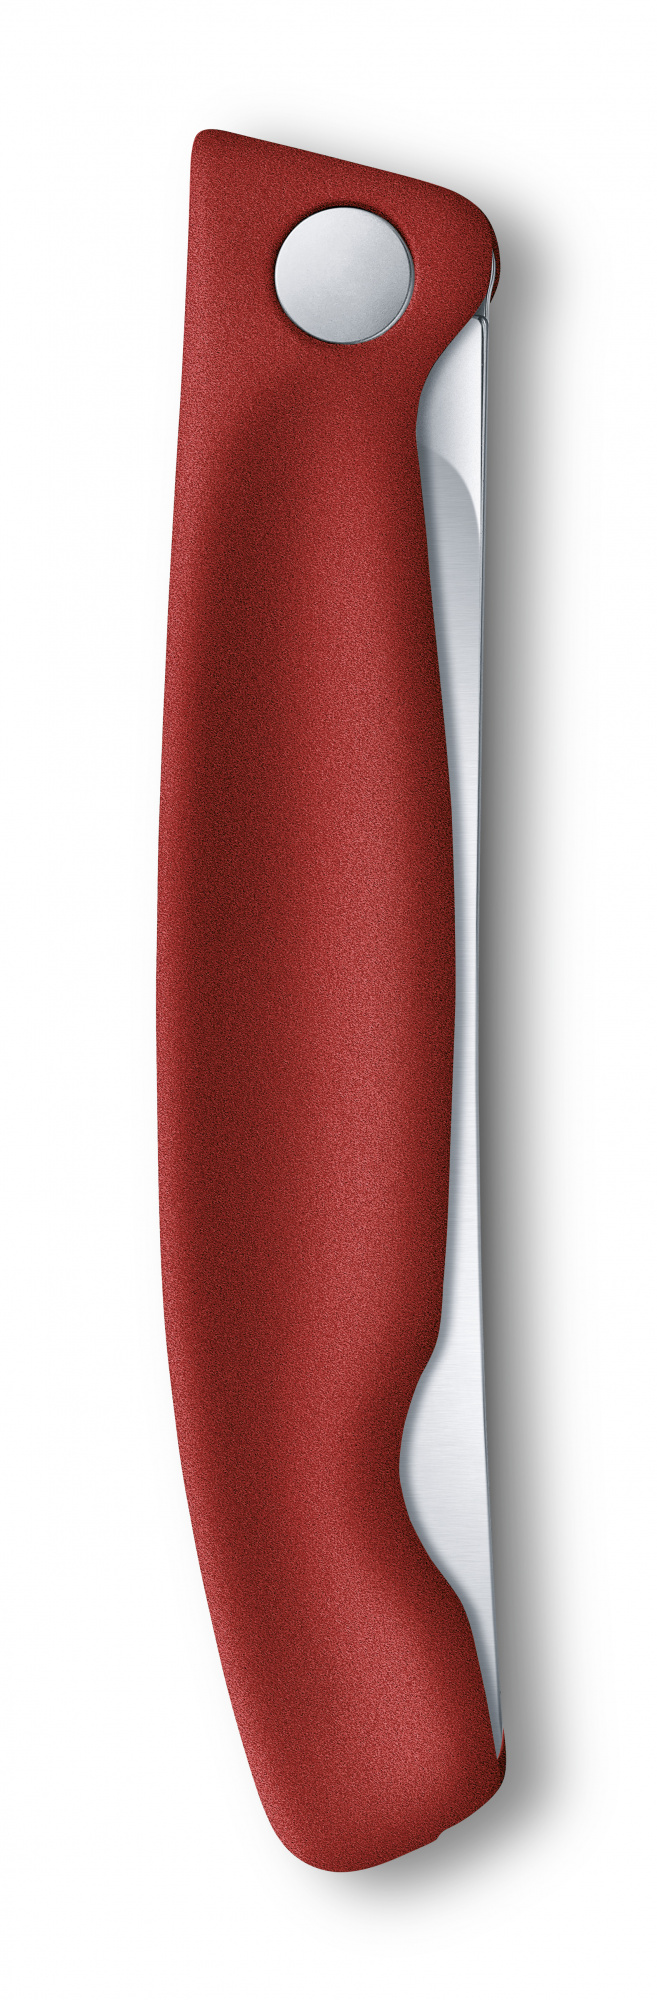 Нож кухонный Victorinox Swiss Classic (6.7831.FB) стальной столовый лезв.110мм серрейт. заточка красный блистер